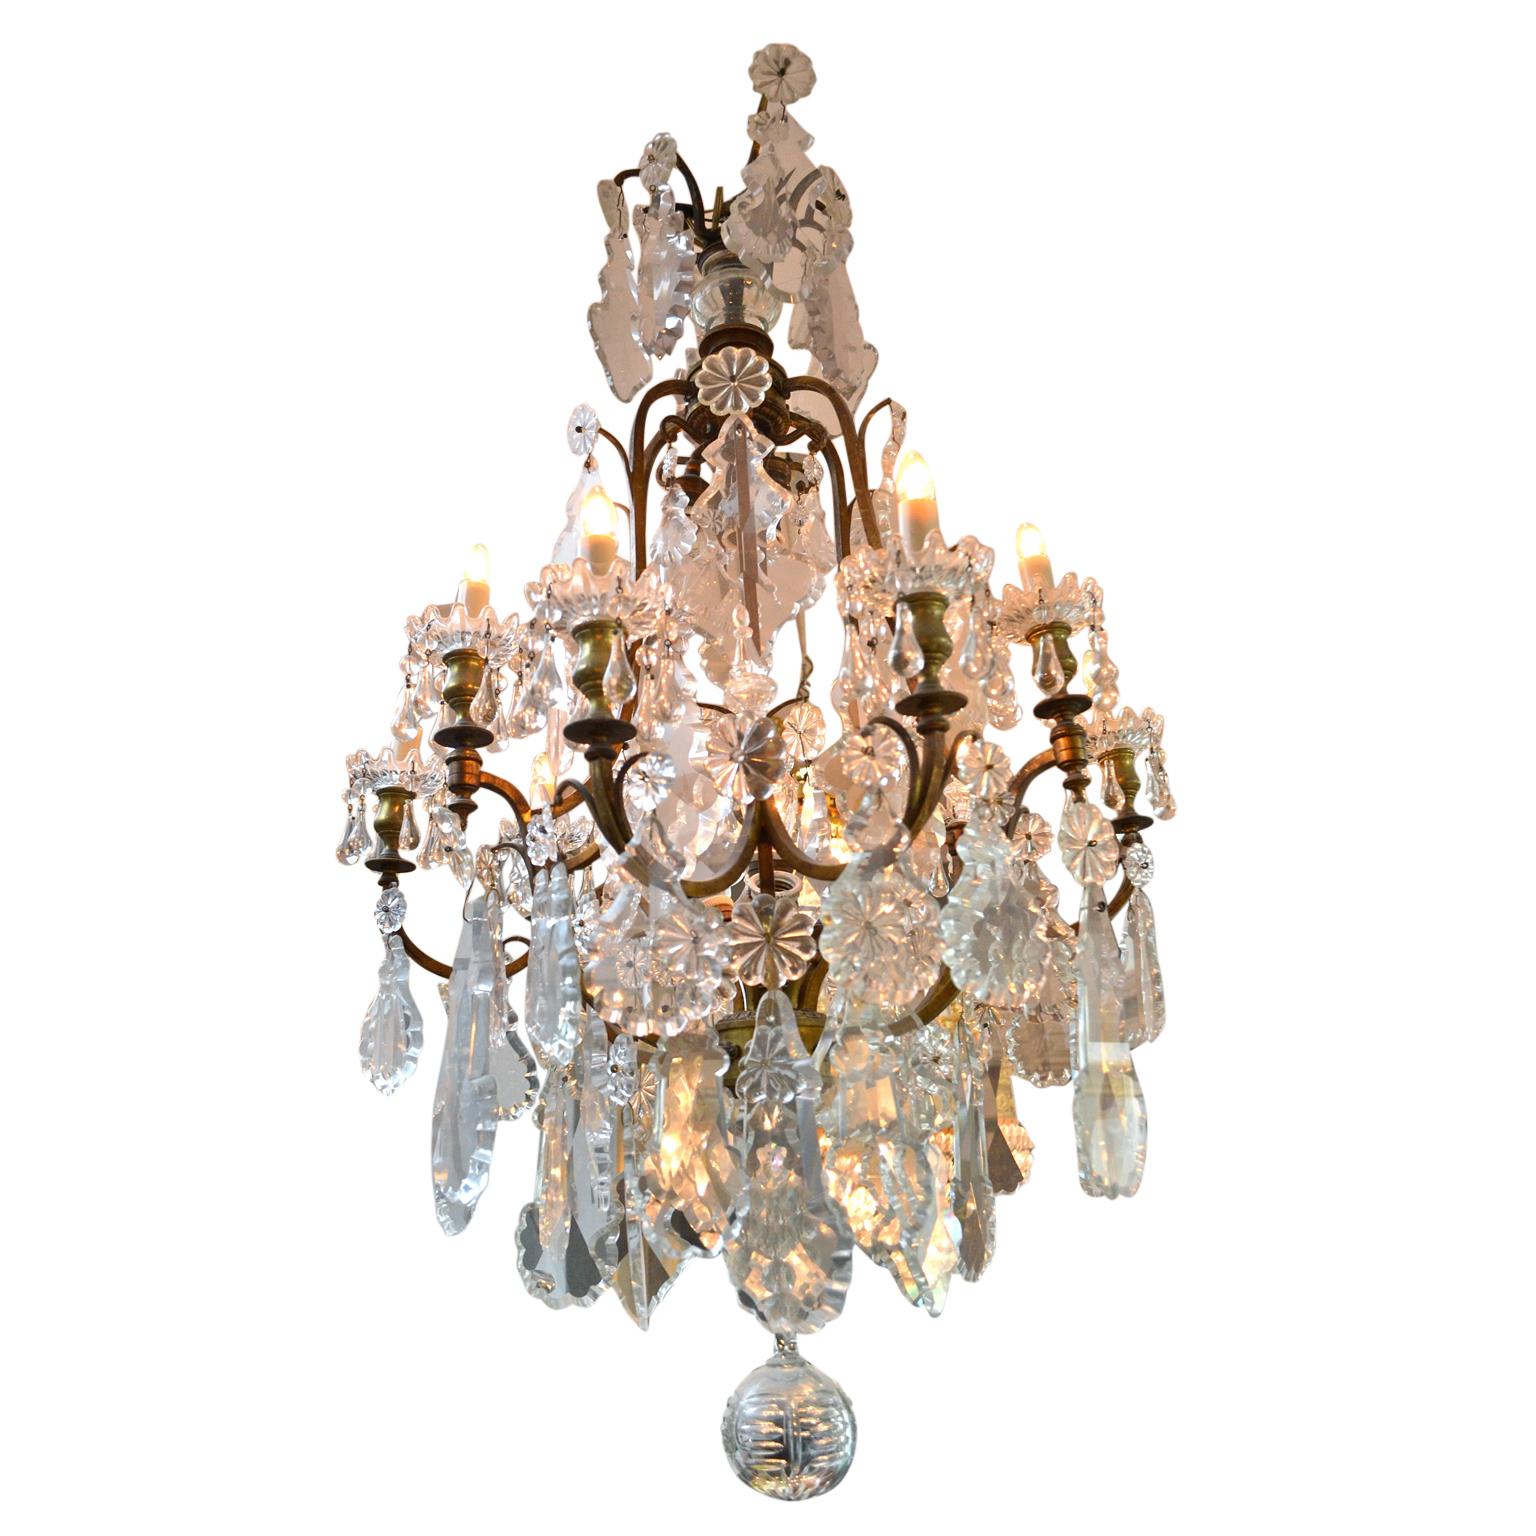 Un lustre classique de style Louis XV en forme de cage d'oiseau avec neuf bras ; la structure en métal doré est lourdement chargée de plaquettes en cristal de différentes tailles ; à l'origine éclairé par des bougies mais maintenant complètement